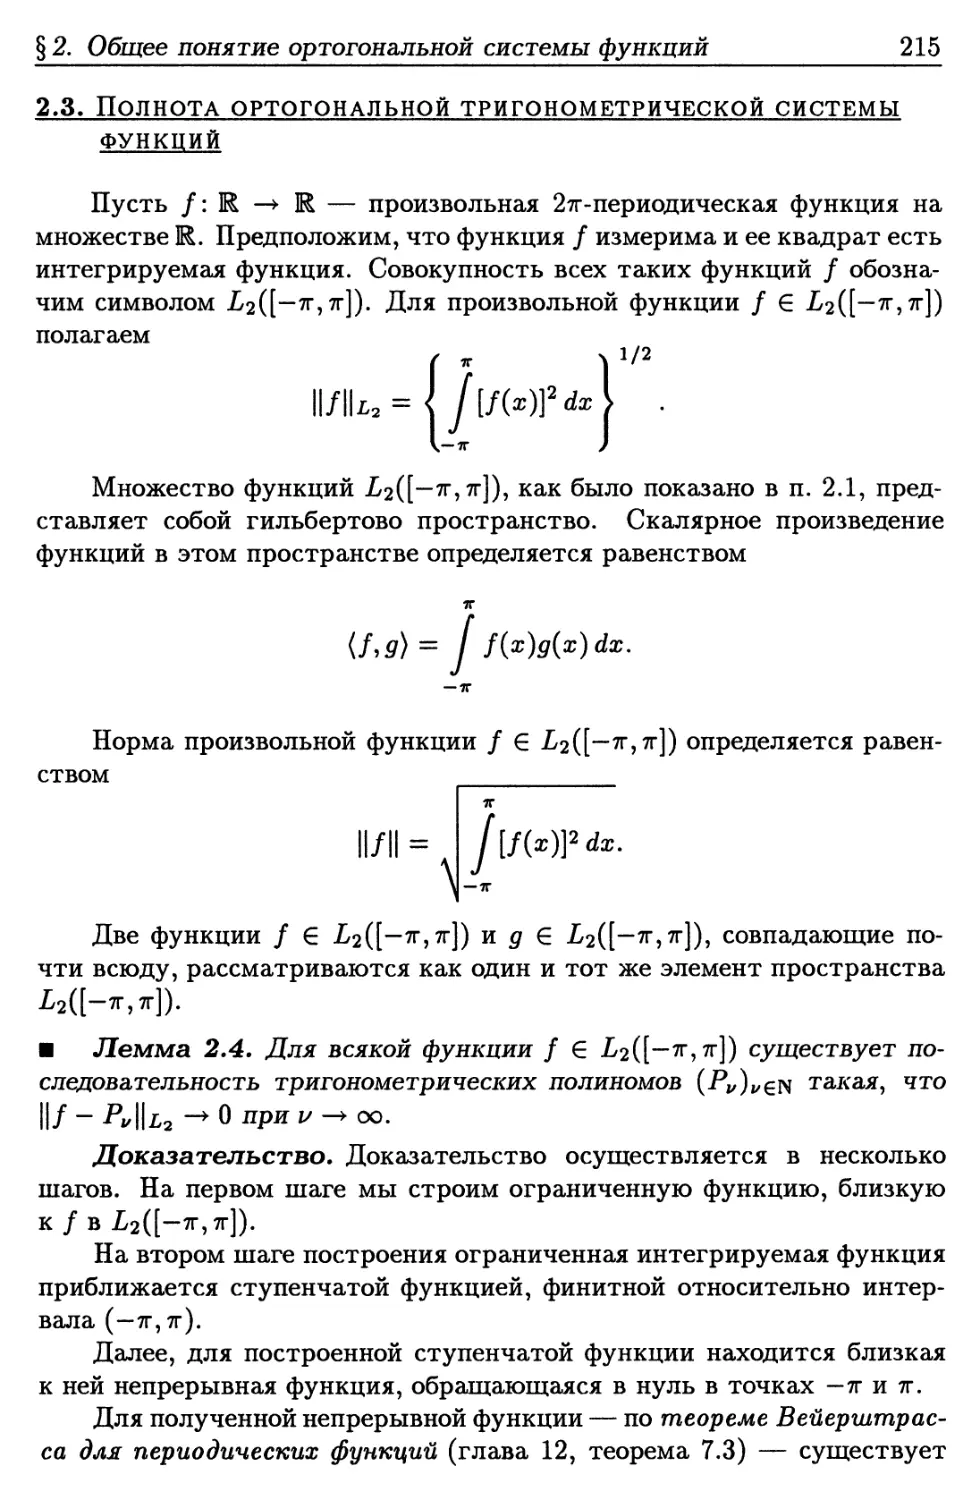 2.3. Полнота ортогональной тригонометрической системы функций